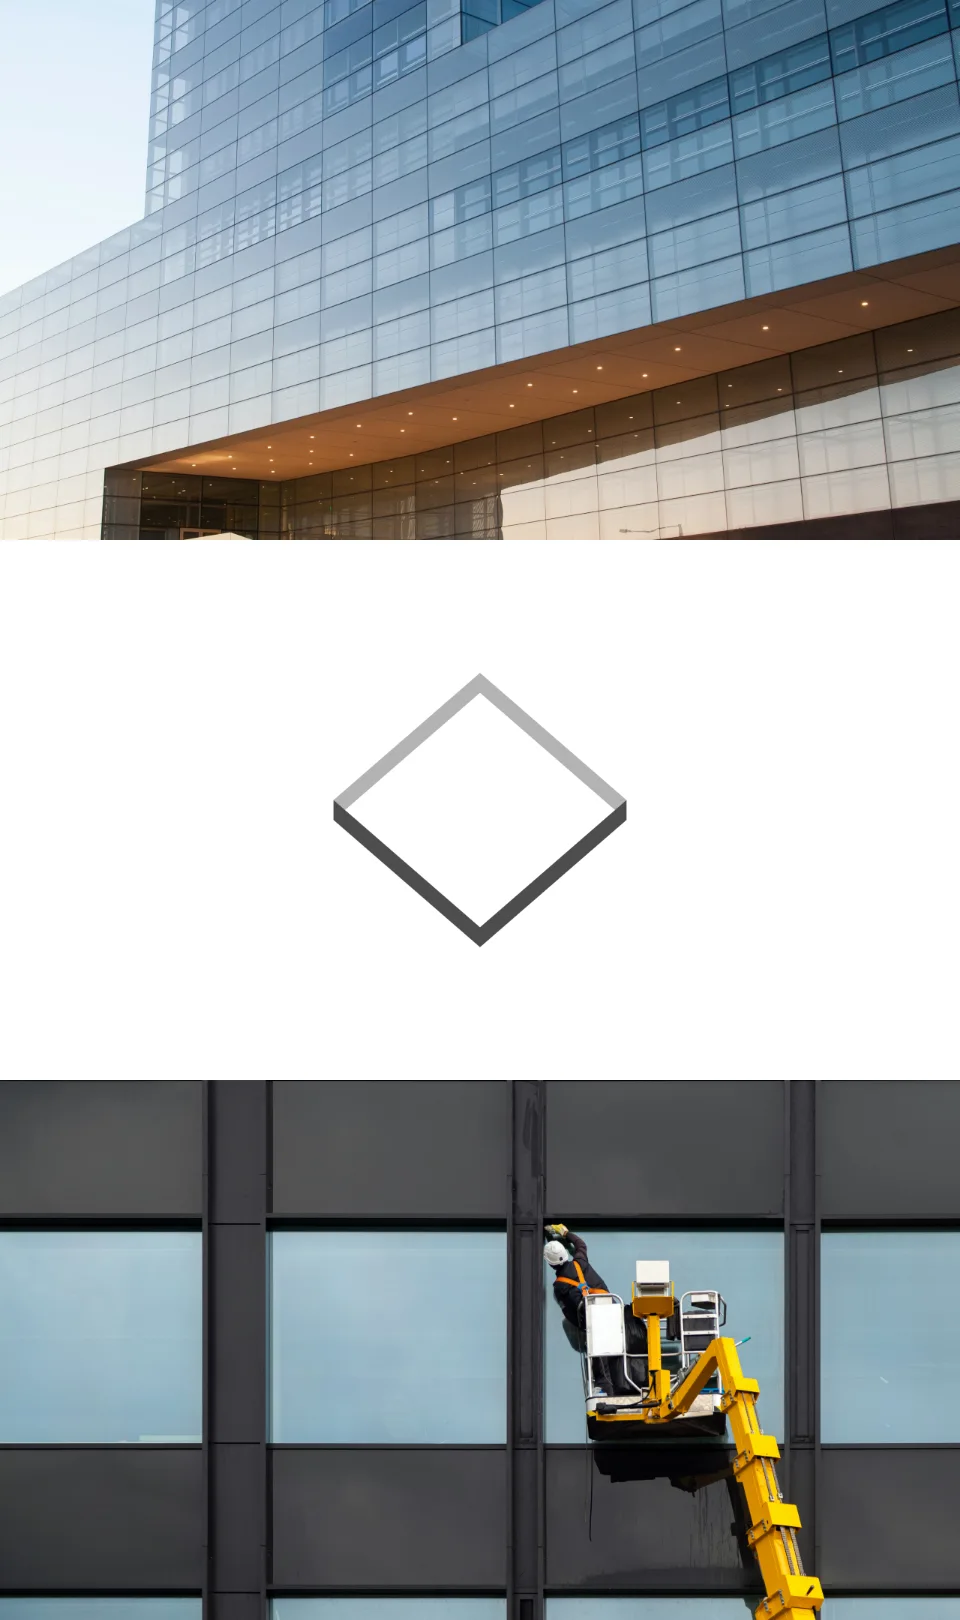 Collage que muestra la arquitectura moderna de vidrio, el logotipo de Romano Glass y la instalación de vidrio en progreso, ilustrando la gama completa de servicios de la empresa.